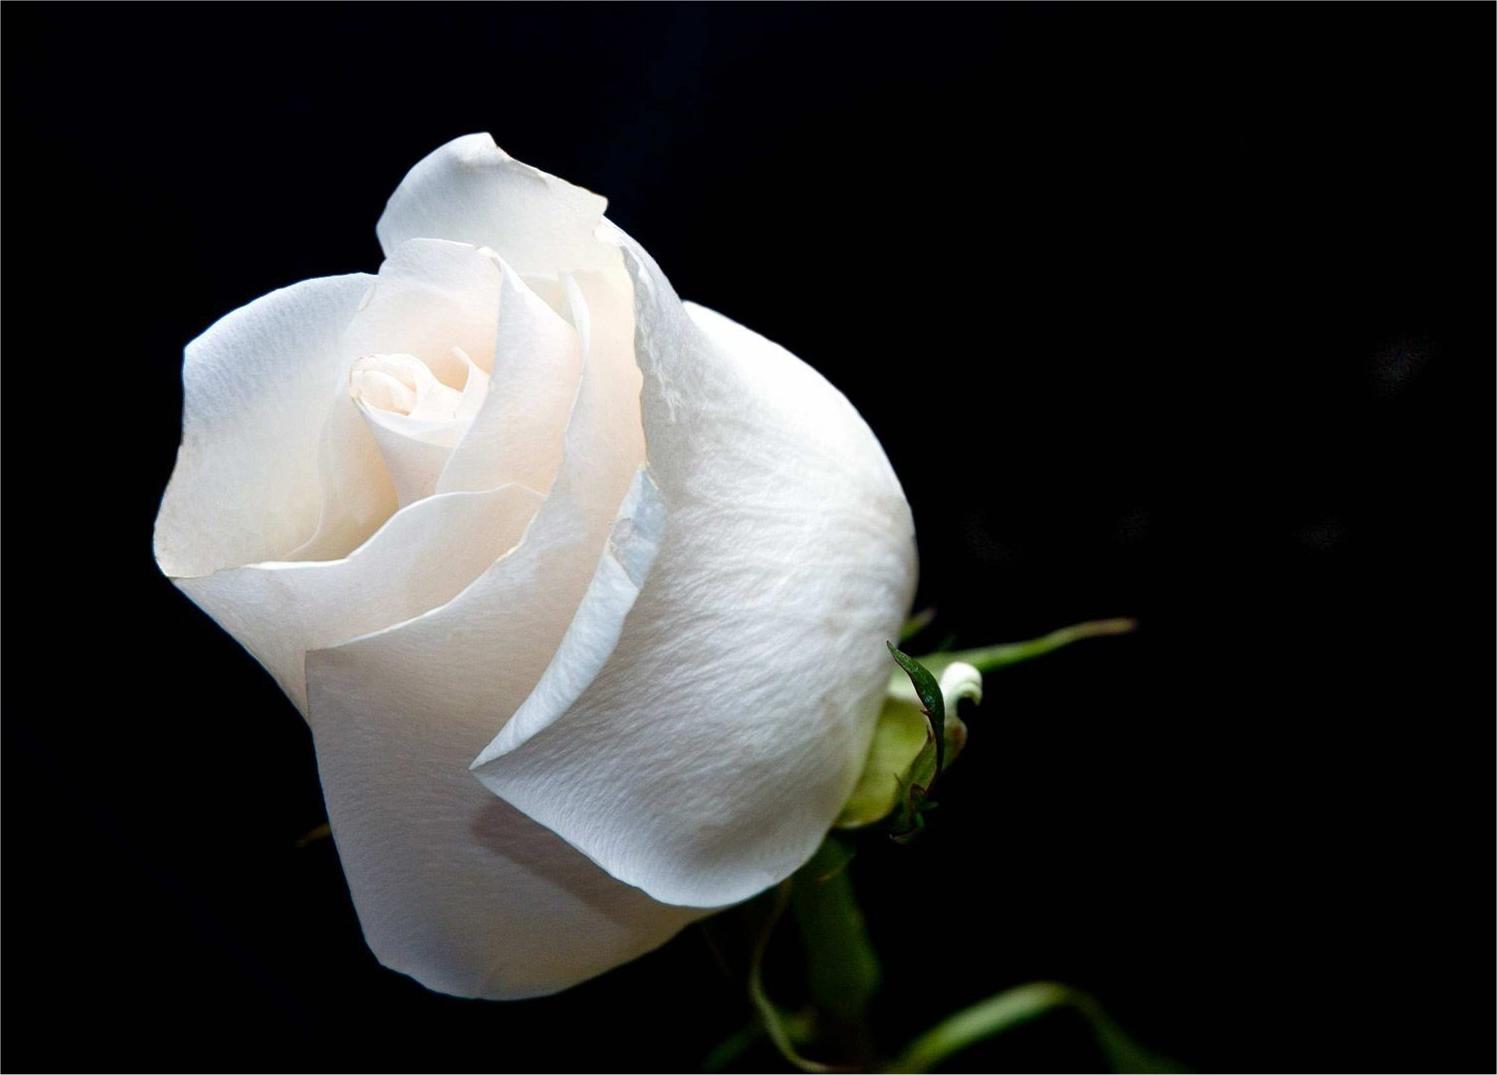 Văn hóa hoa hồng trắng luôn là nét đẹp đặc trưng của nhiều quốc gia trên thế giới. Cùng khám phá những giá trị văn hóa, tình yêu và sự tôn trọng cùng với những cánh hoa hồng trắng xinh đẹp, sắc sảo.